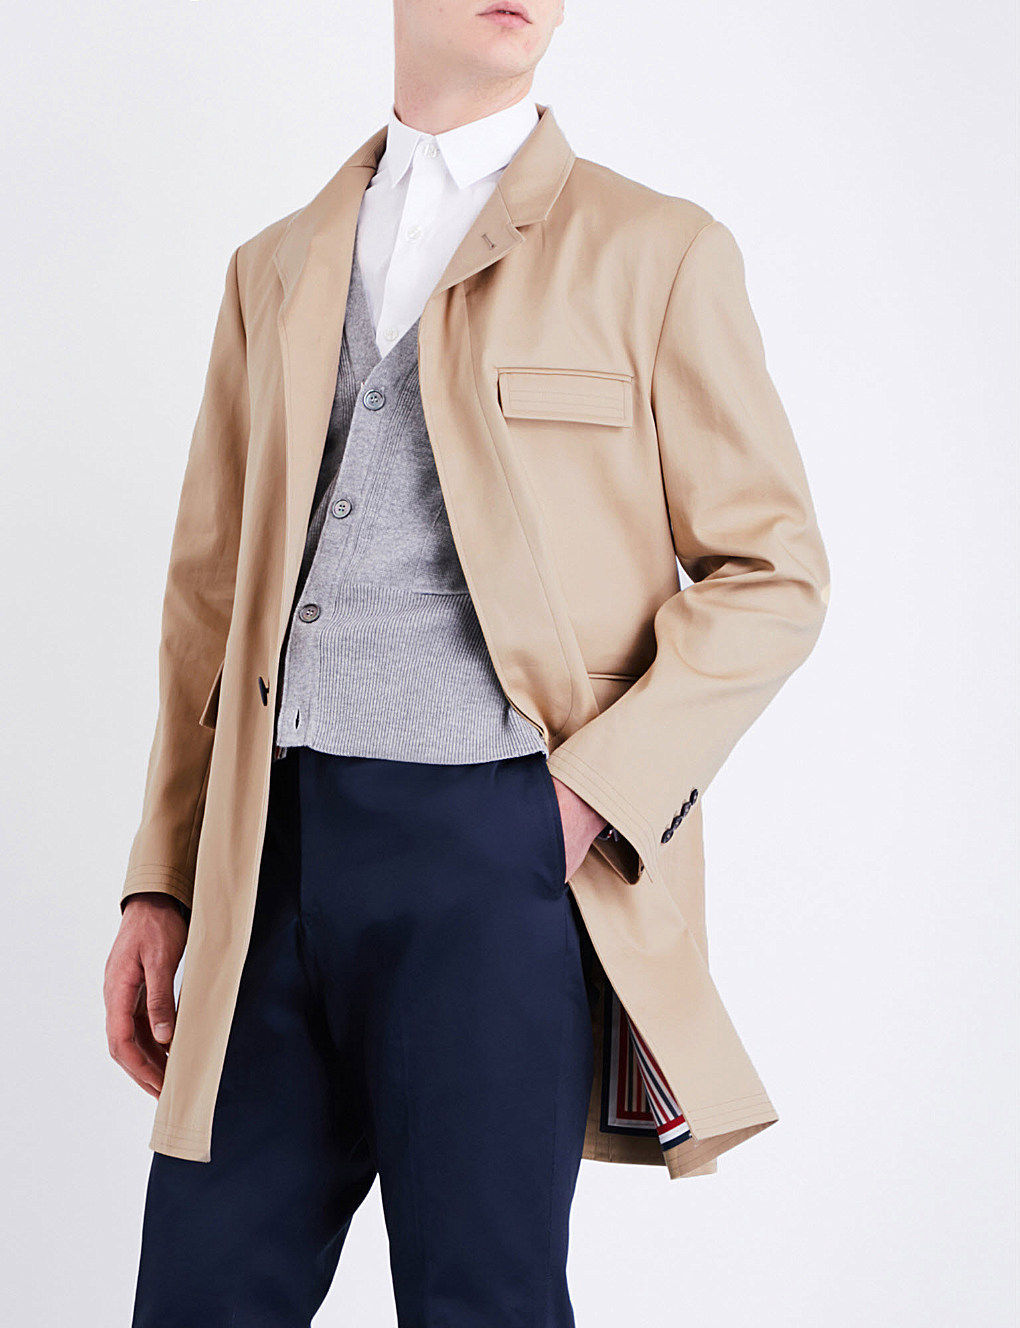 Thom Browne : quelques-unes de ses plus belles créations de vestes classiques